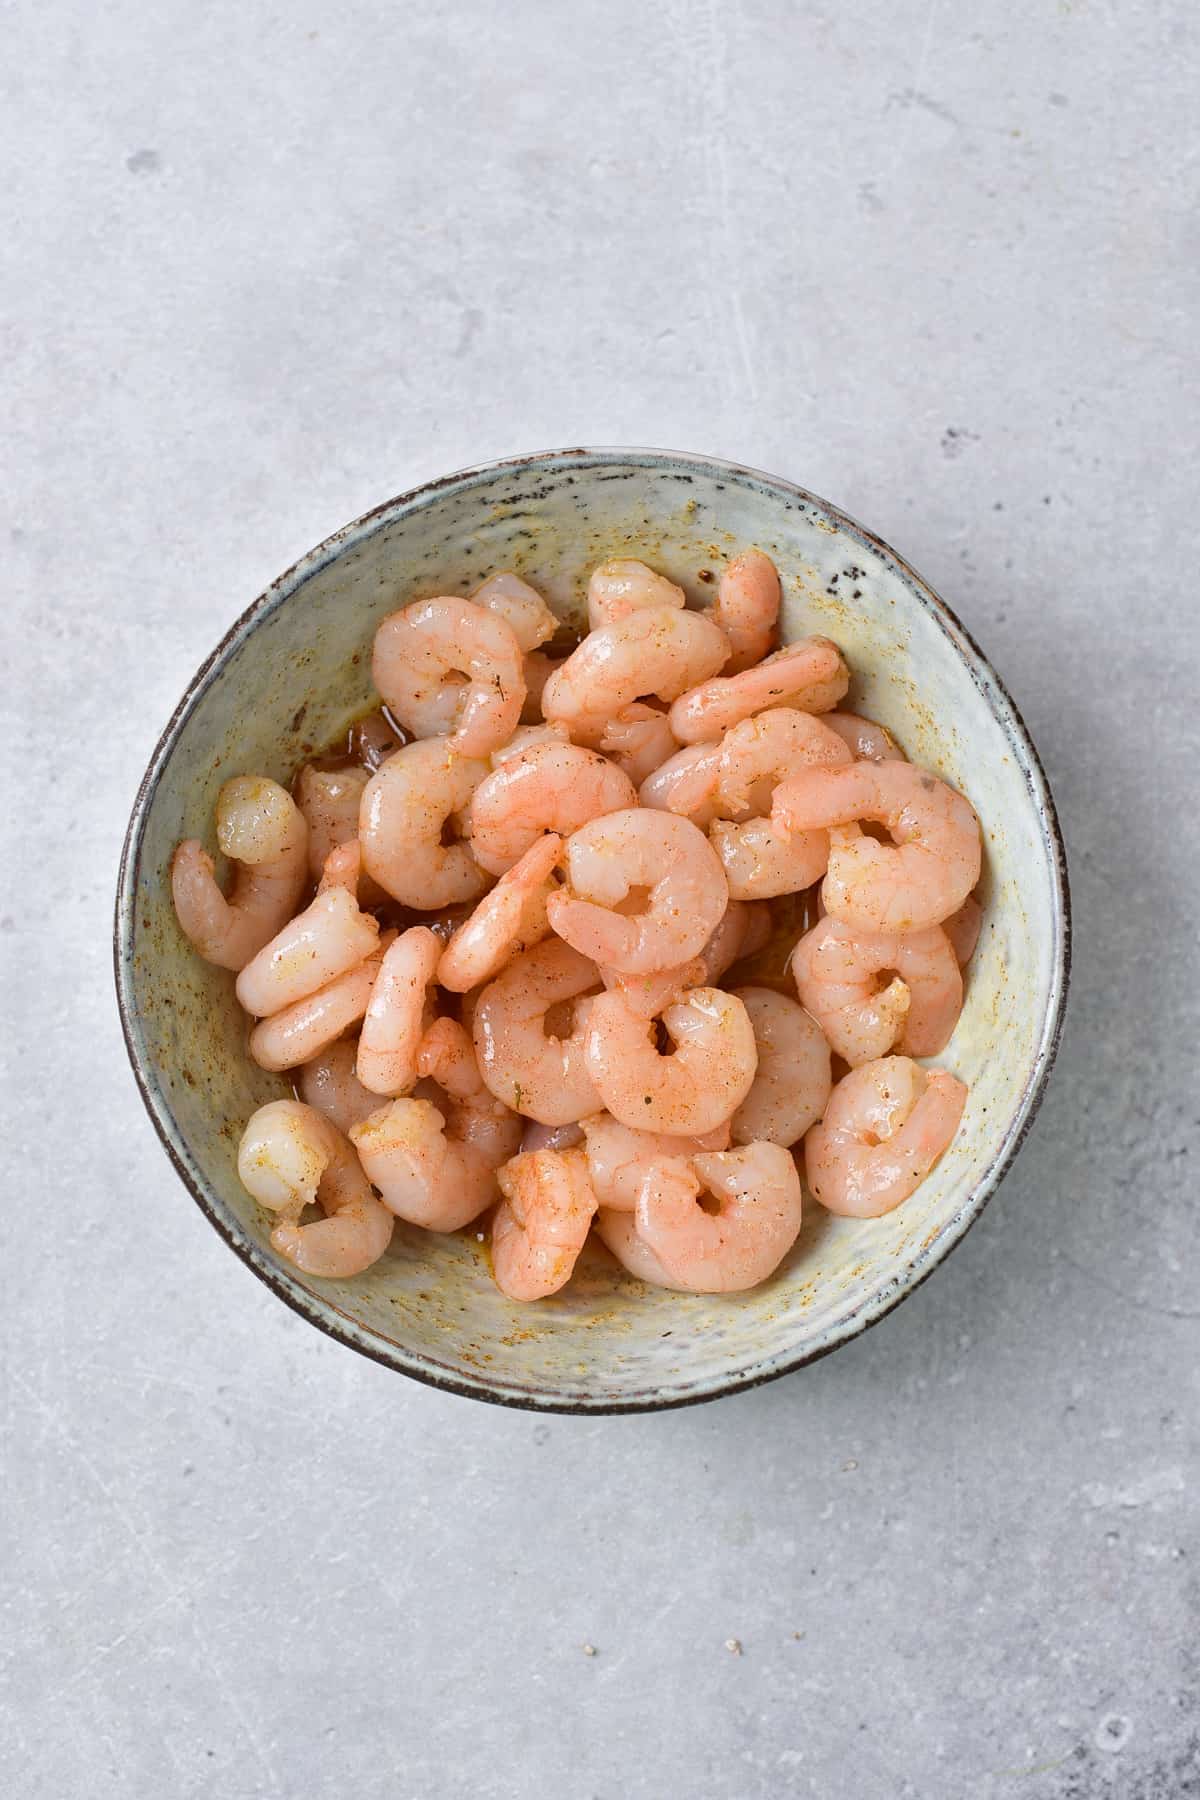 Boiled shrimp in a bowl.